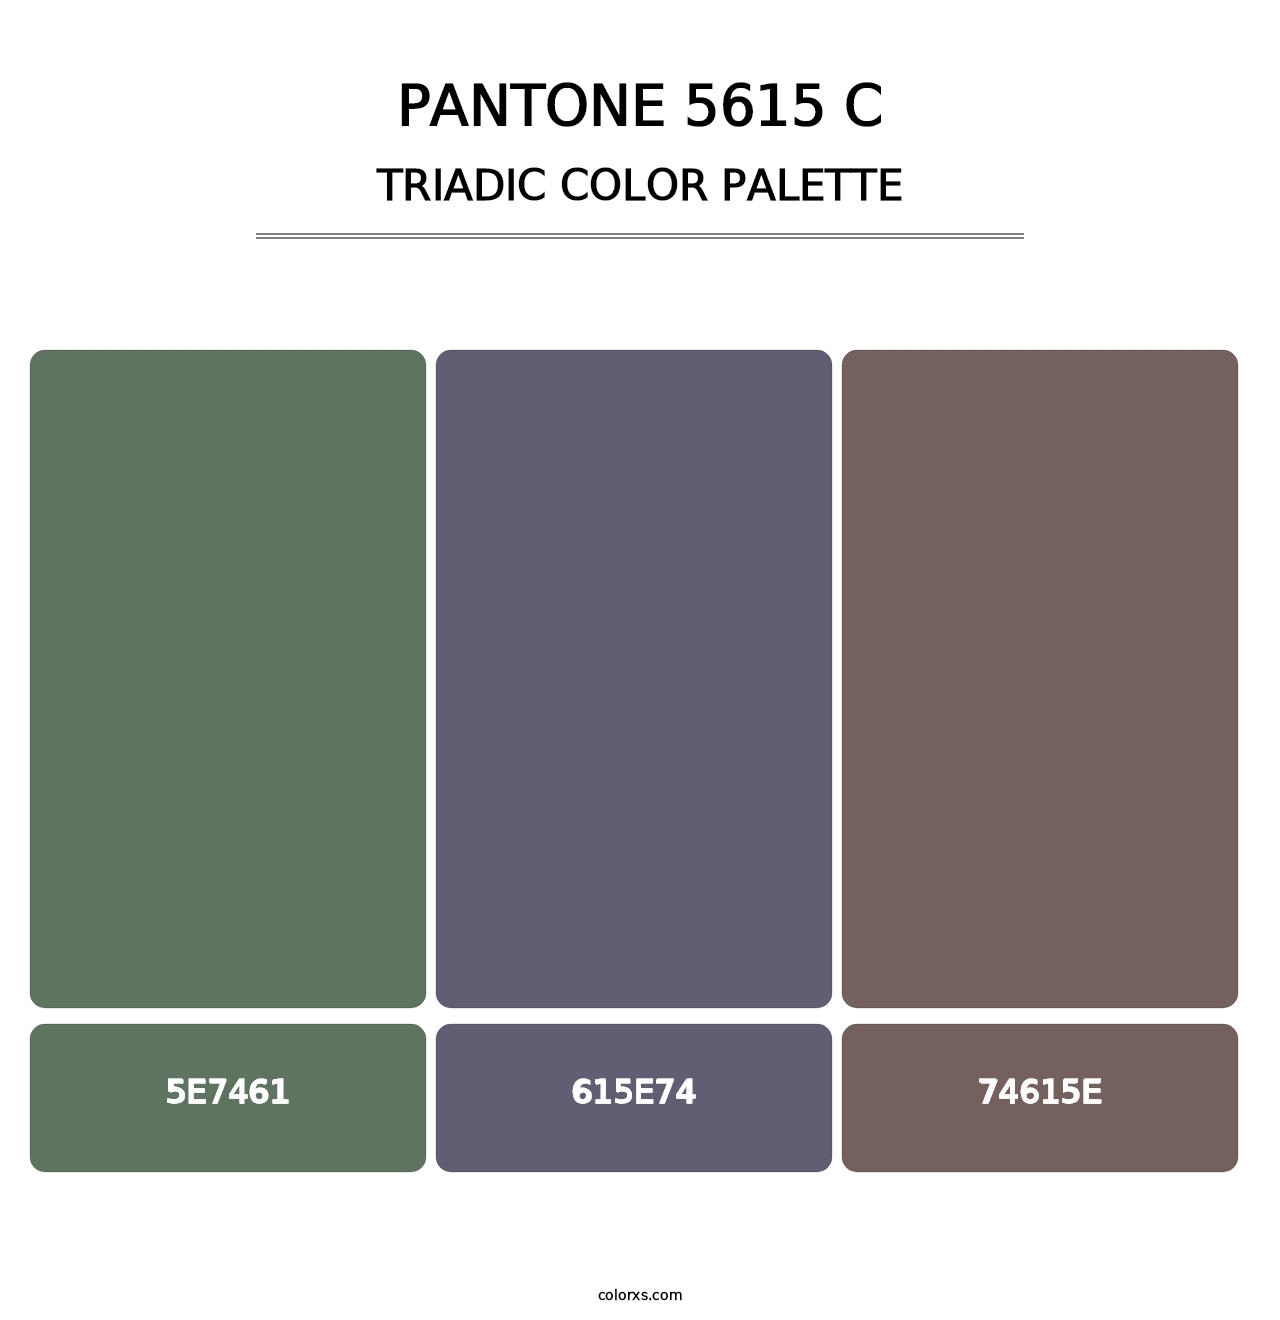 PANTONE 5615 C - Triadic Color Palette